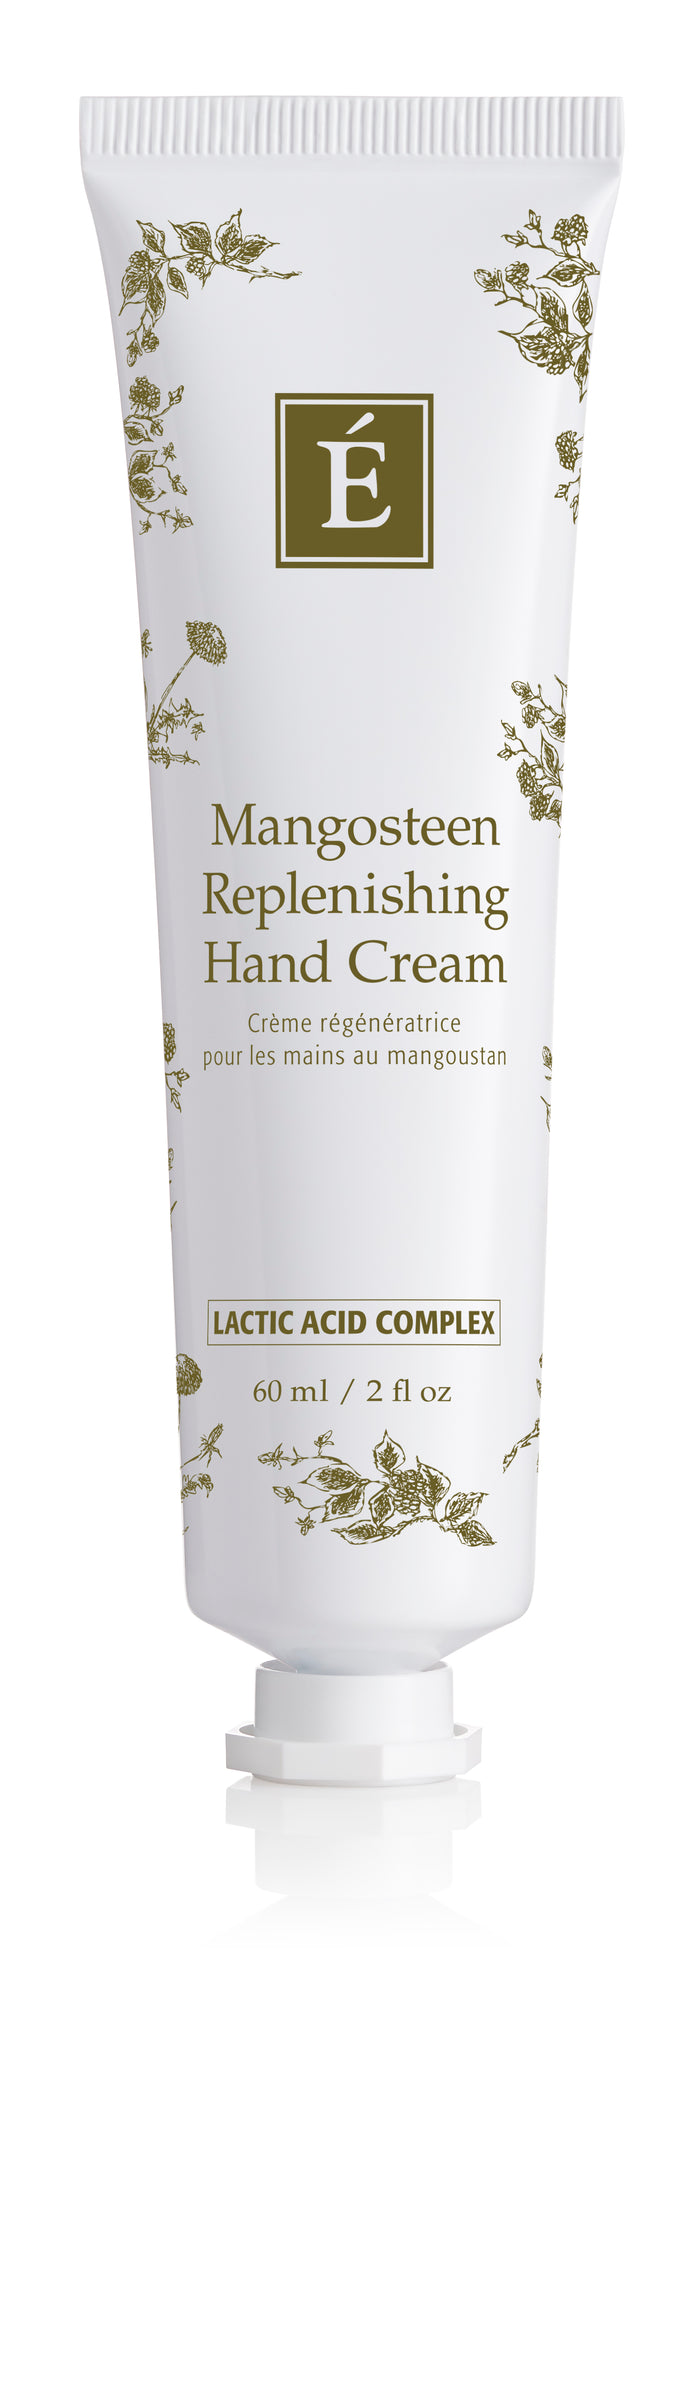 Mangosteen Replenishing Hand Cream